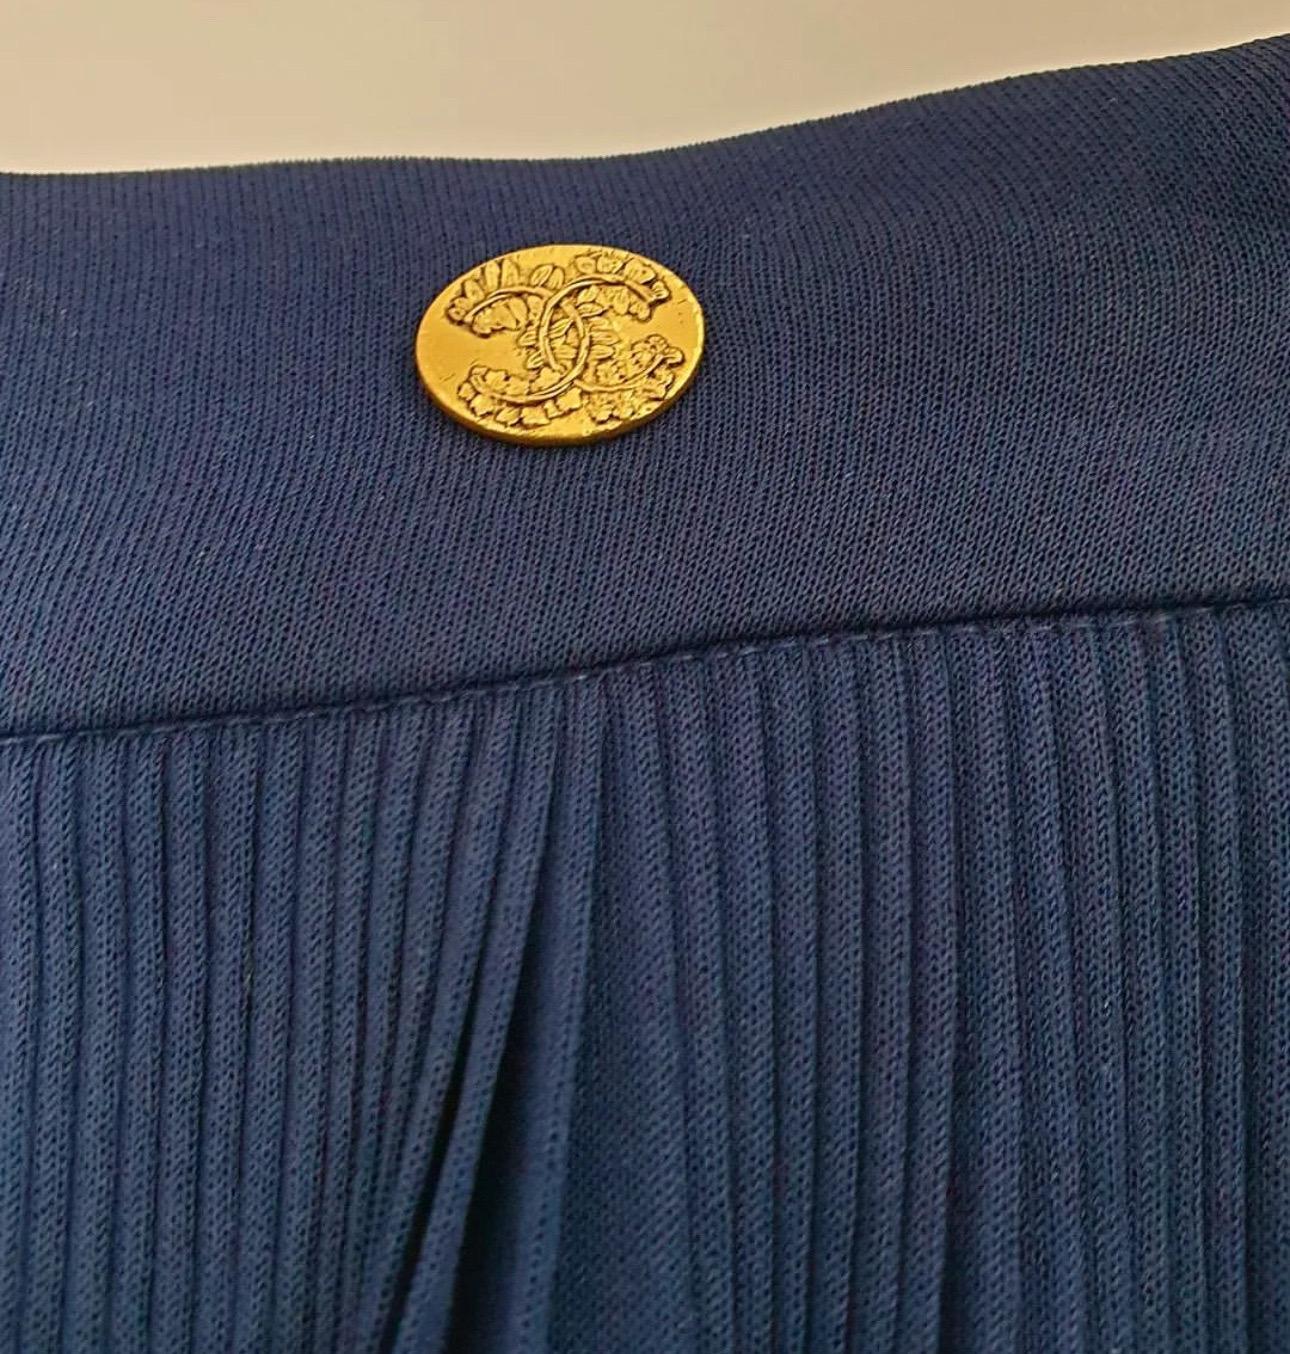 Ce superbe pantalon palazzo bleu marine fluide fait partie de la collection Chanel Cruise 2018 Greece, connue pour son souci du détail. 

Confectionné en jersey de soie semi-transparent, ce pantalon offre une sensation de luxe et de légèreté. 

La